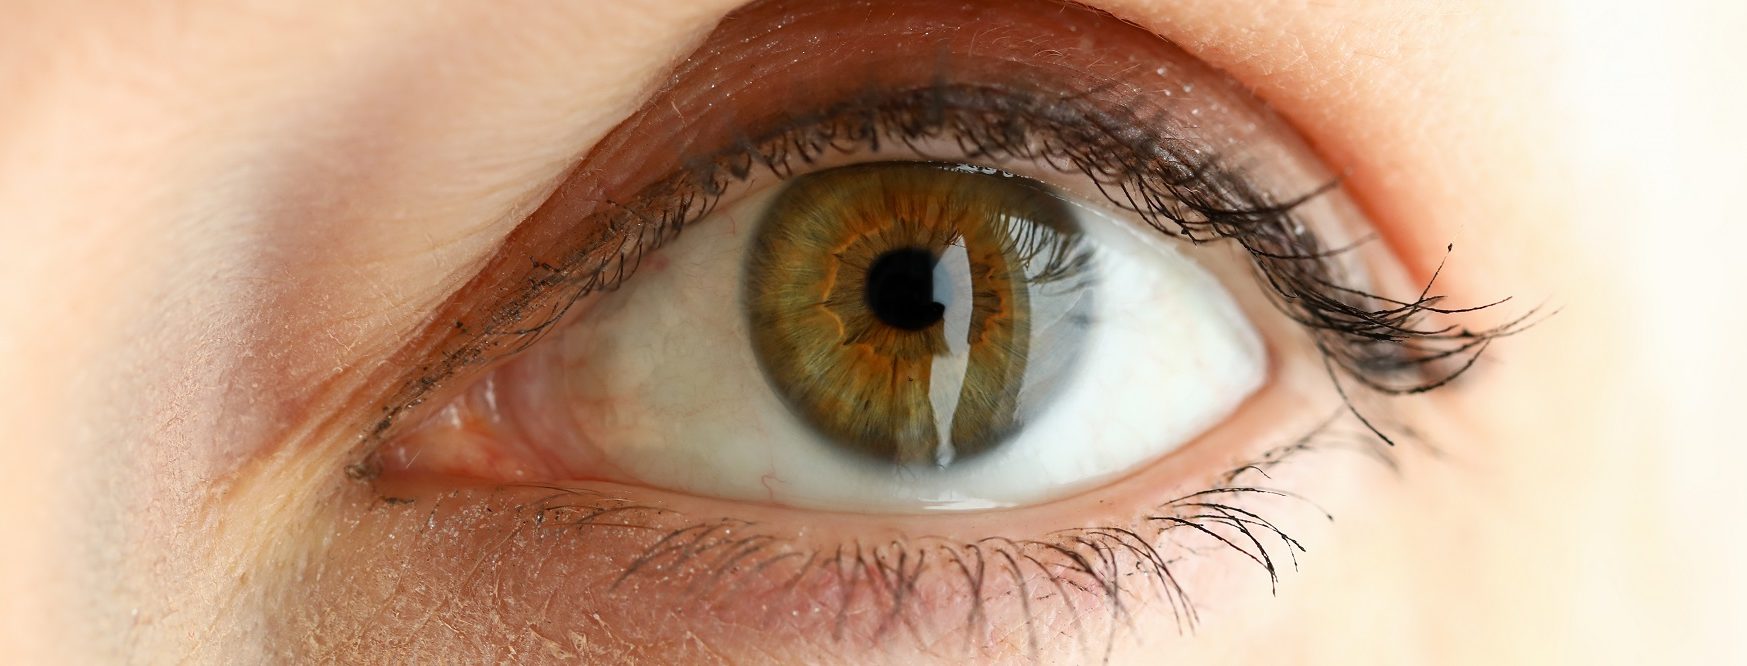 eyesight tips